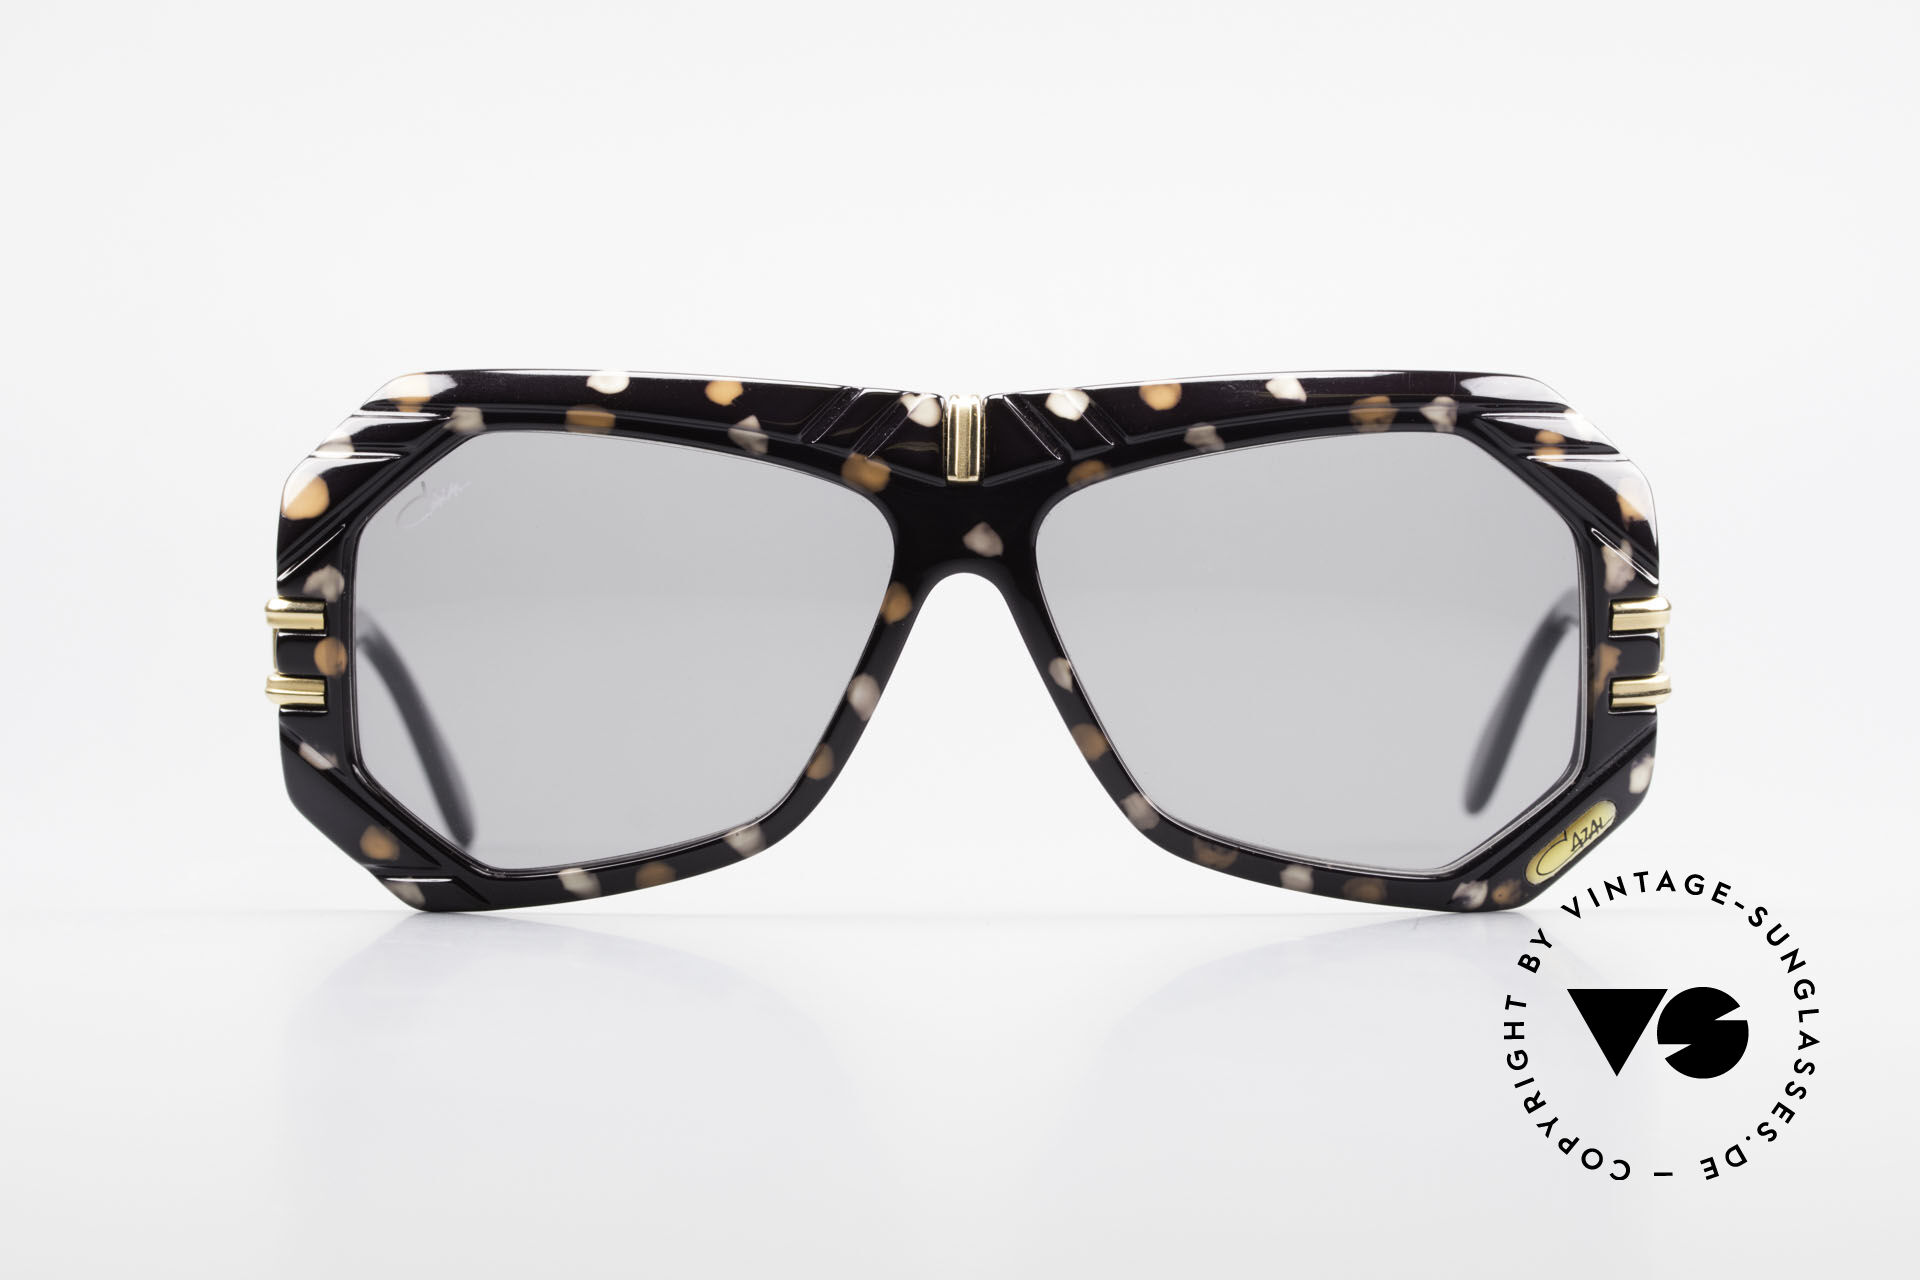 Sunglasses Cazal 868 West Germany Designer Shades